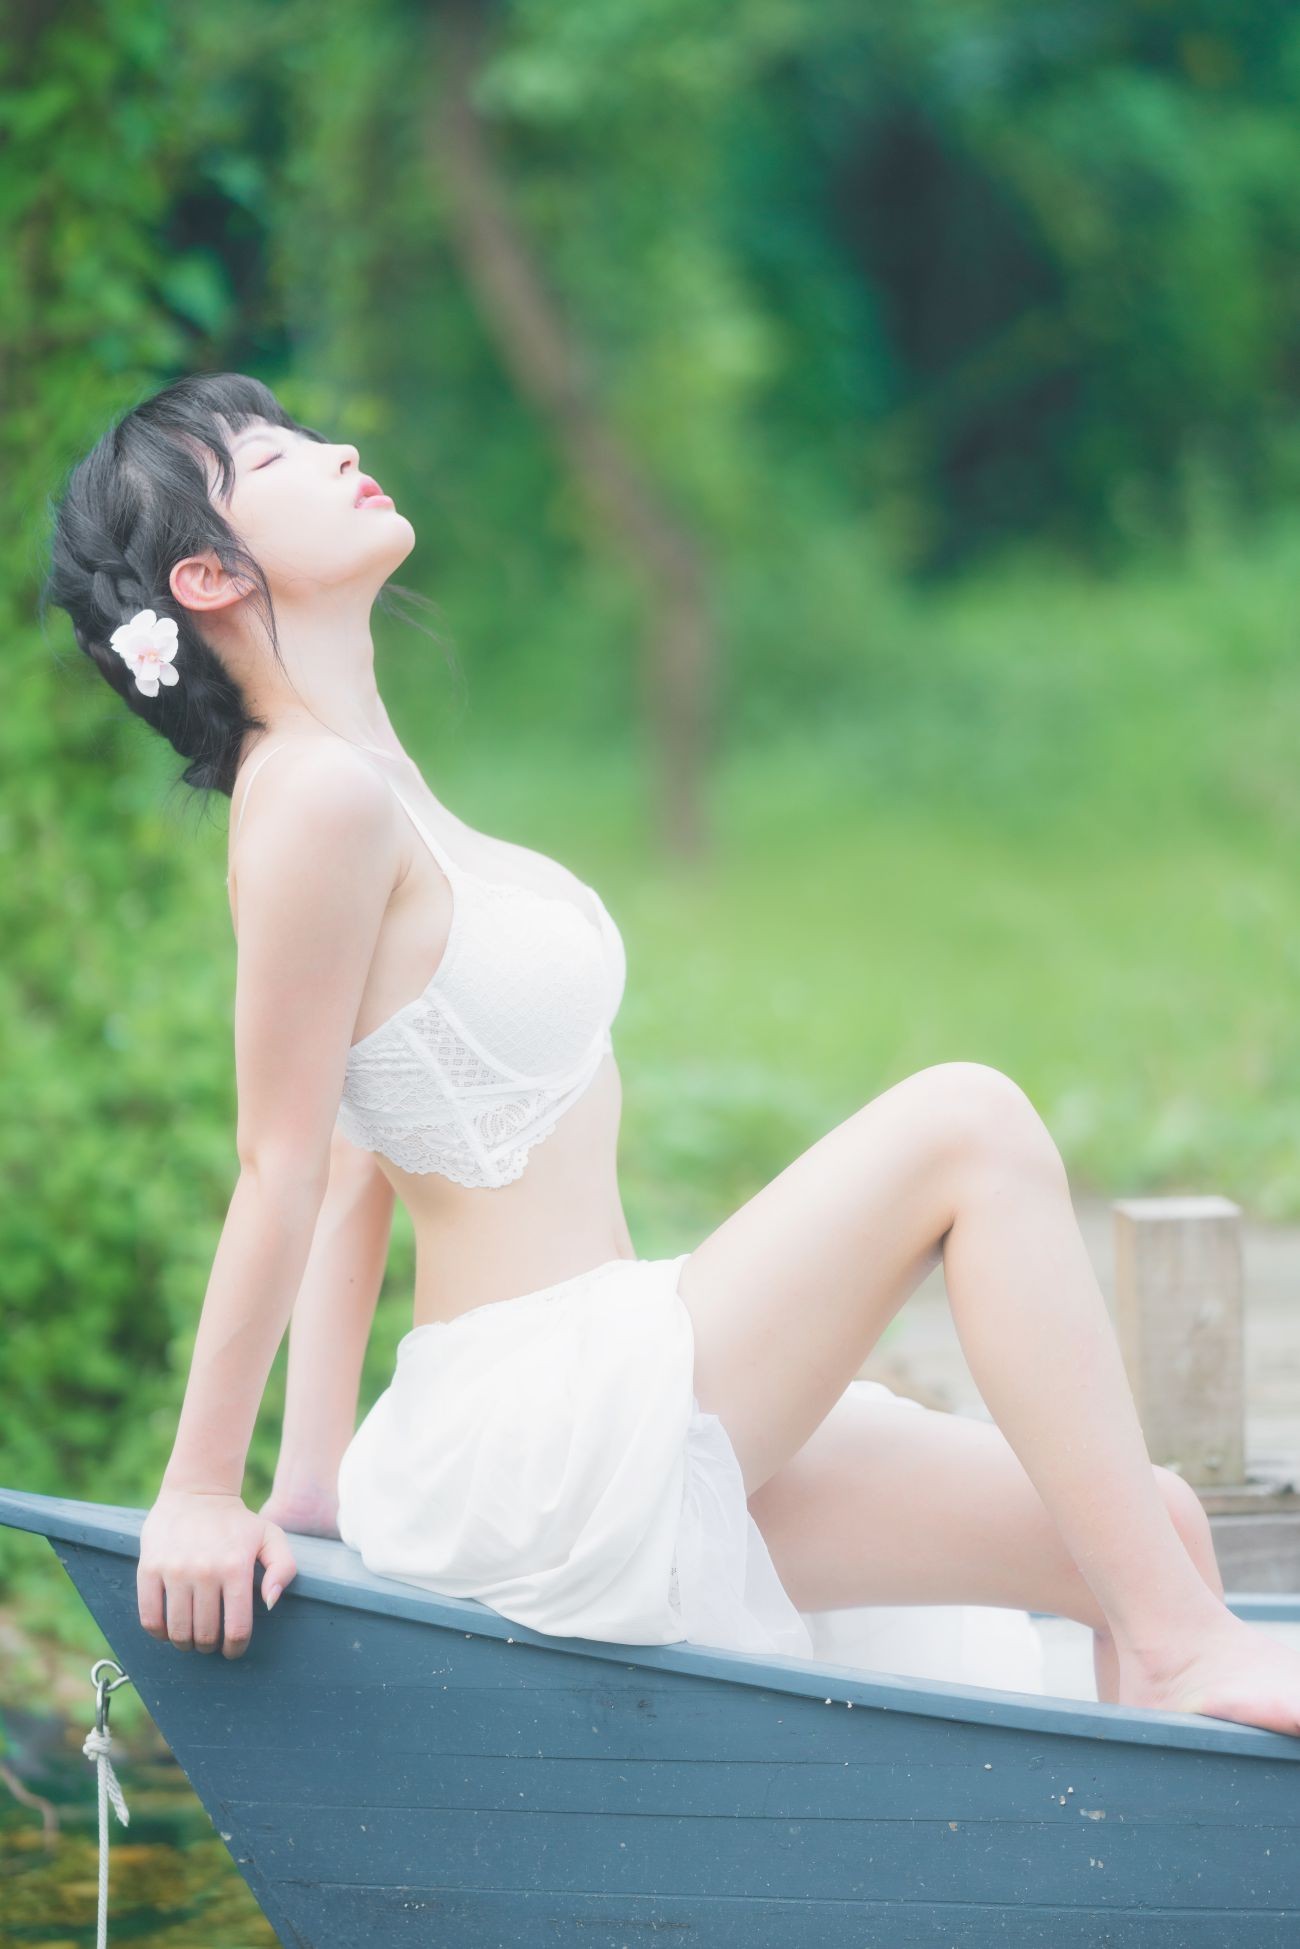 微博美少女清水由乃Cosplay性感写真蕾丝花园 (21)